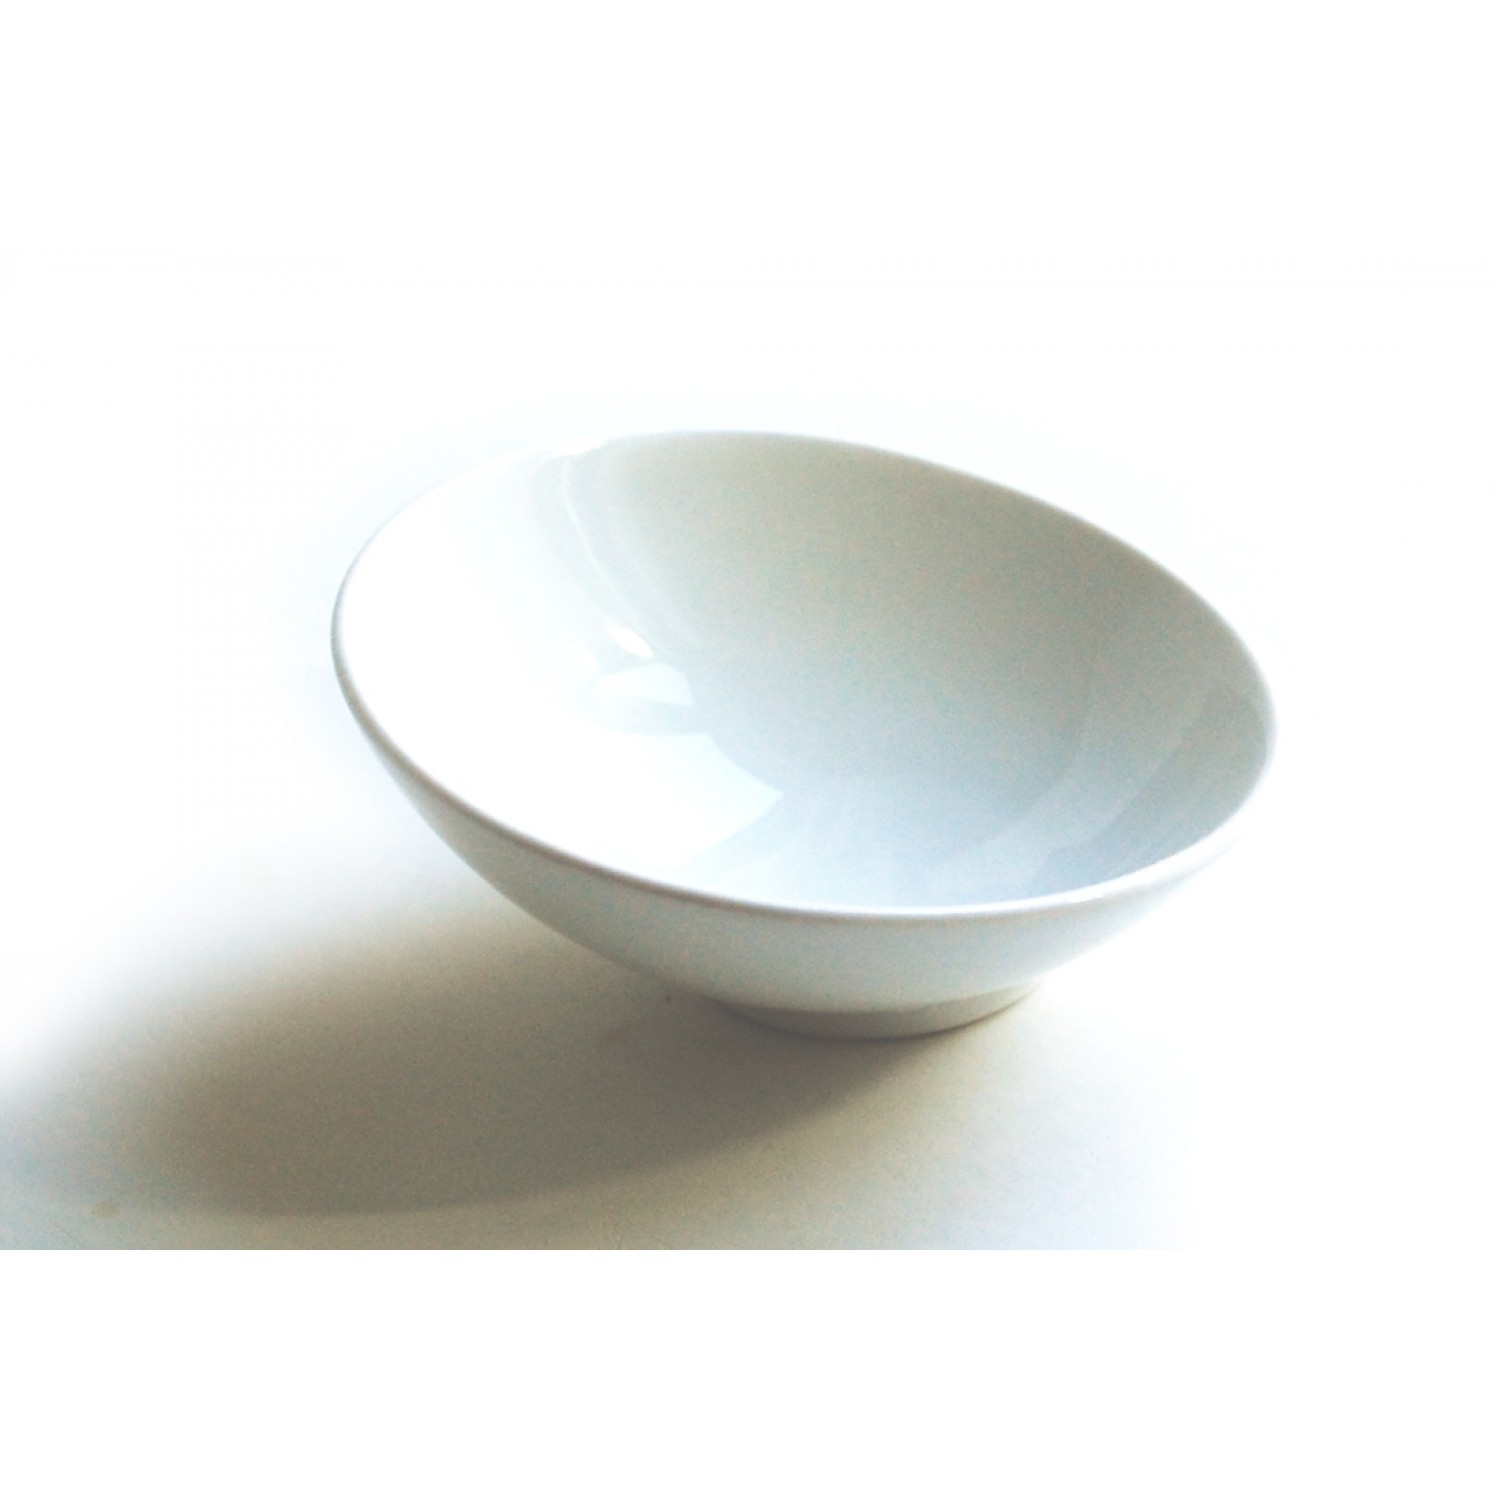 Shaving Mug of Porcelain, white, asymmetrical | Olivenholz erleben